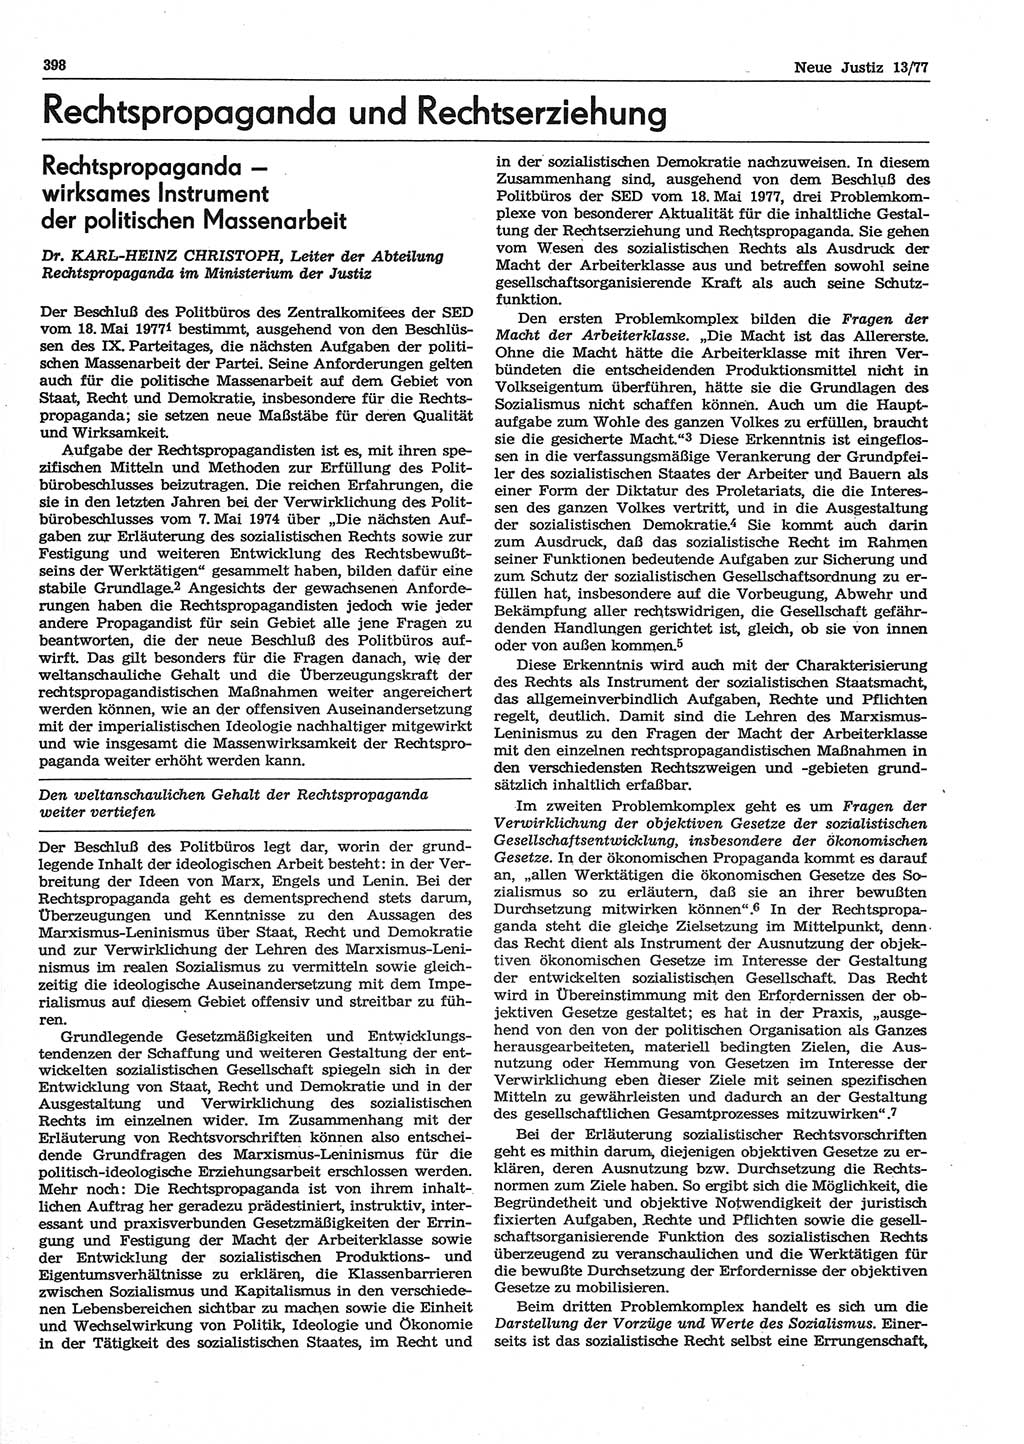 Neue Justiz (NJ), Zeitschrift für Recht und Rechtswissenschaft-Zeitschrift, sozialistisches Recht und Gesetzlichkeit, 31. Jahrgang 1977, Seite 398 (NJ DDR 1977, S. 398)